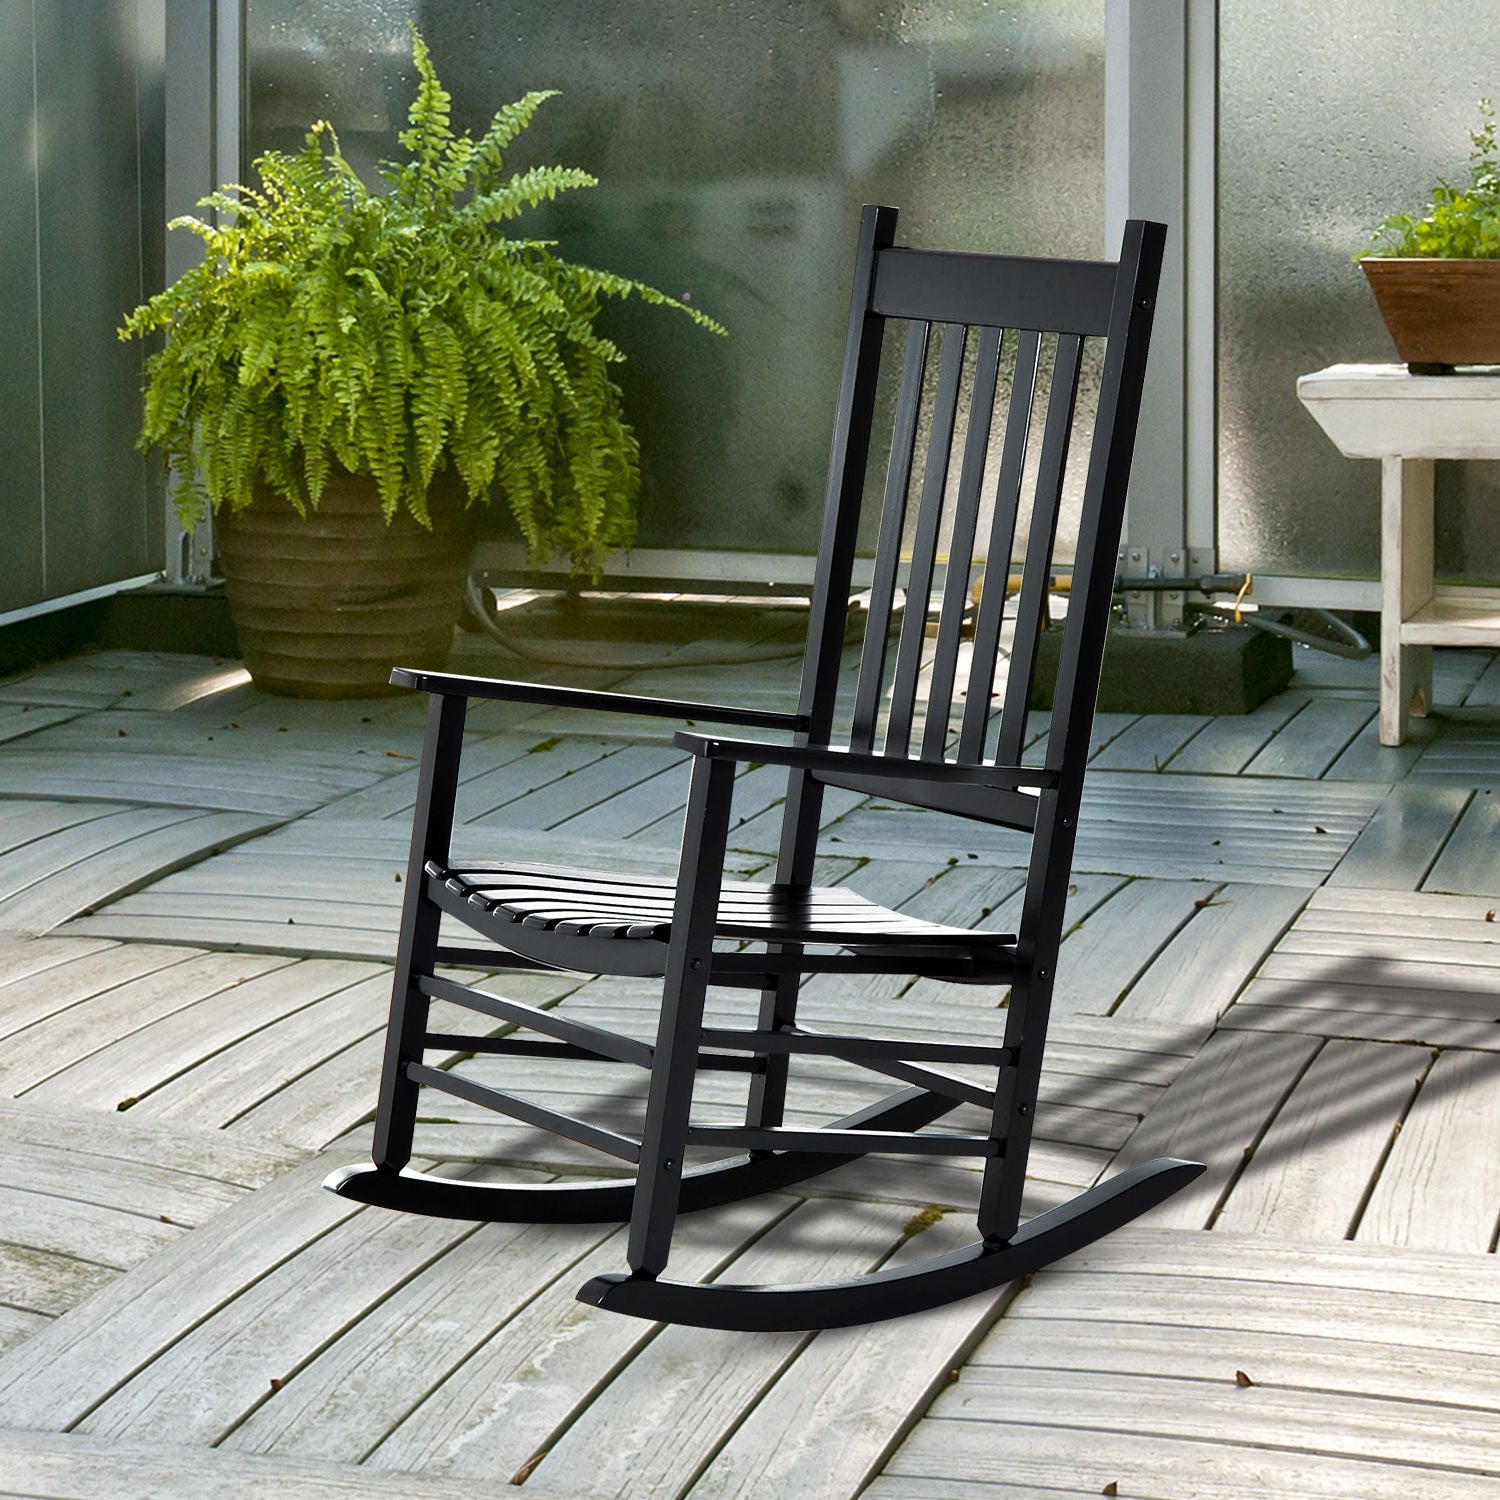 Outsunny Outdoor Porch Rocking Chair Armchair Wooden Patio Rocker Balcony Deck Garden Seat Black - Inspirely